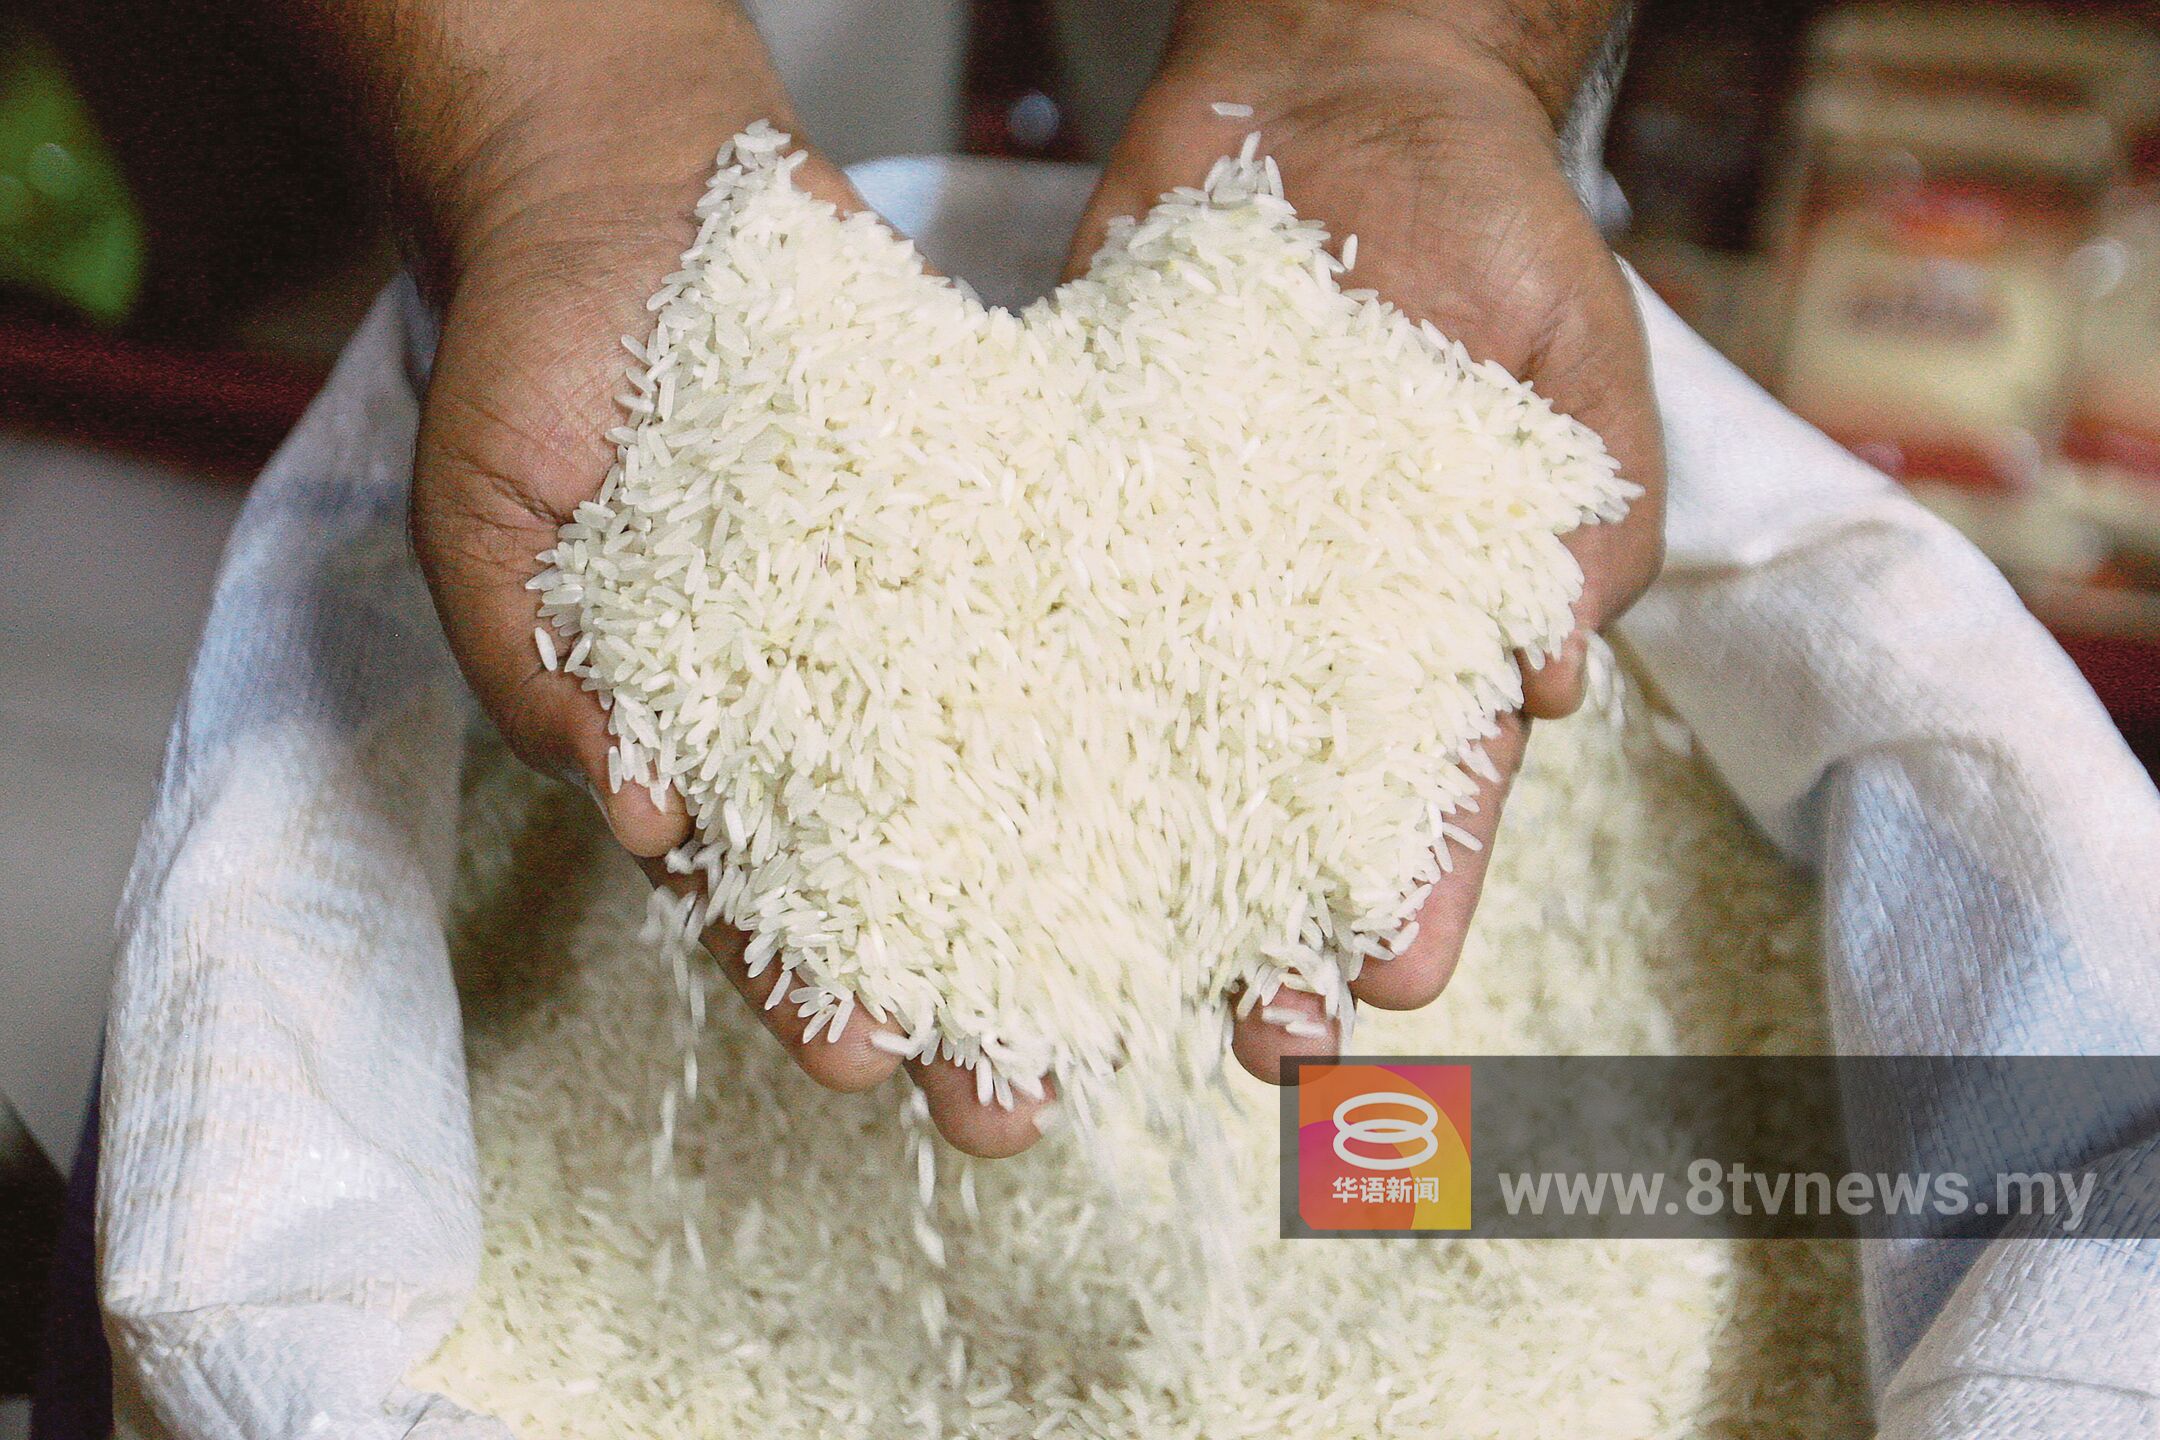 政府下周讨论白米管制价 首相:米价有望调低